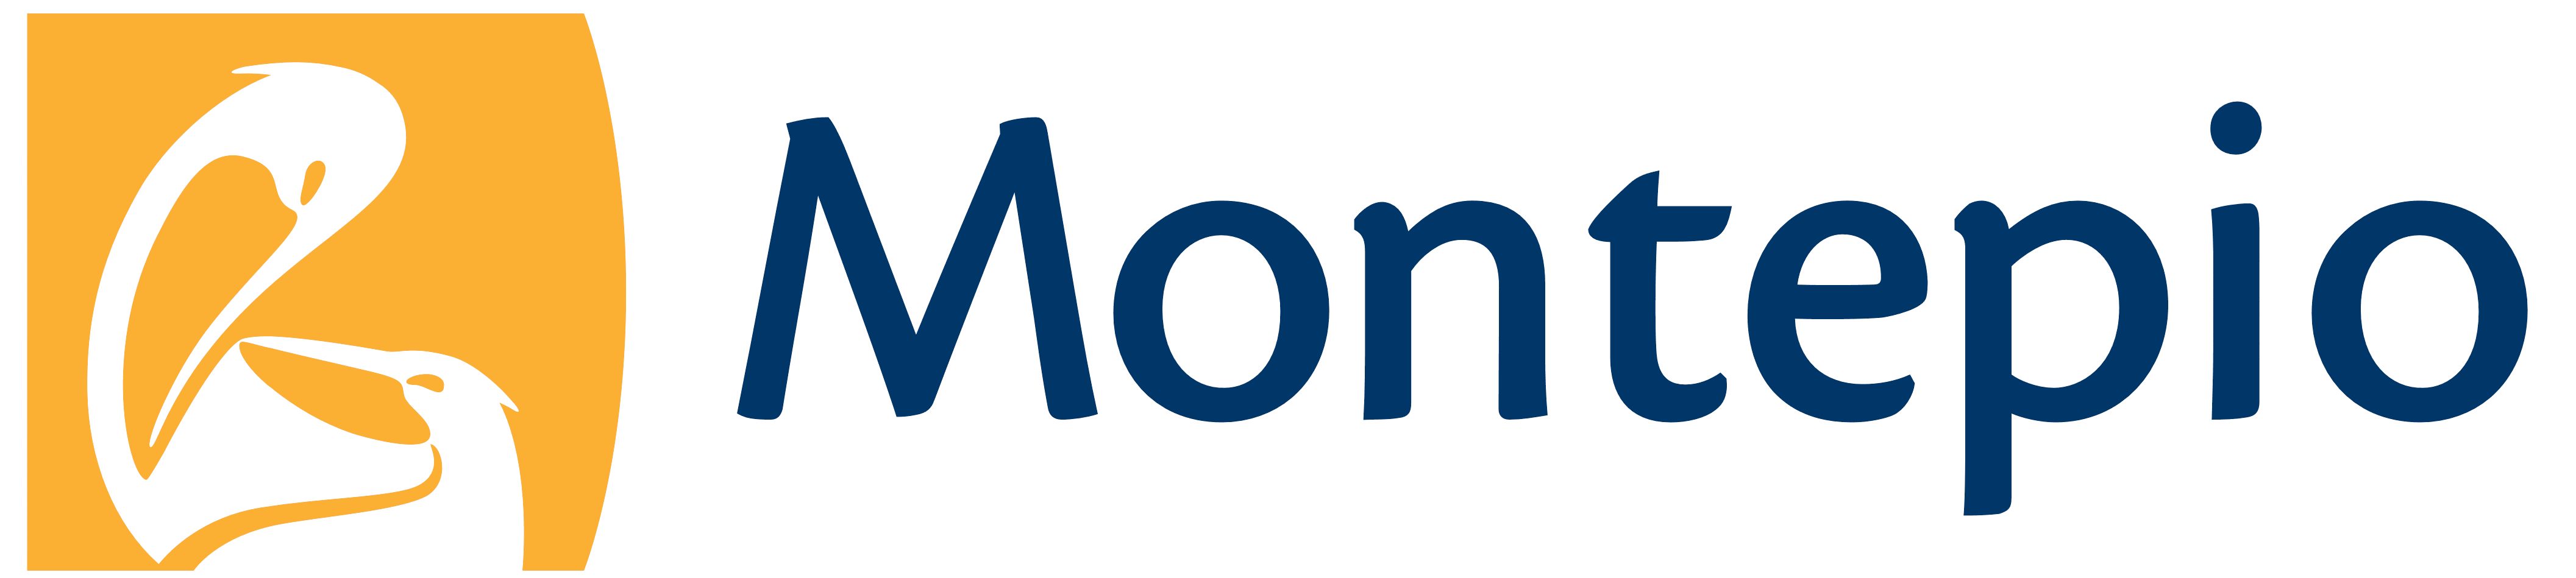 Montepio Brand Logo